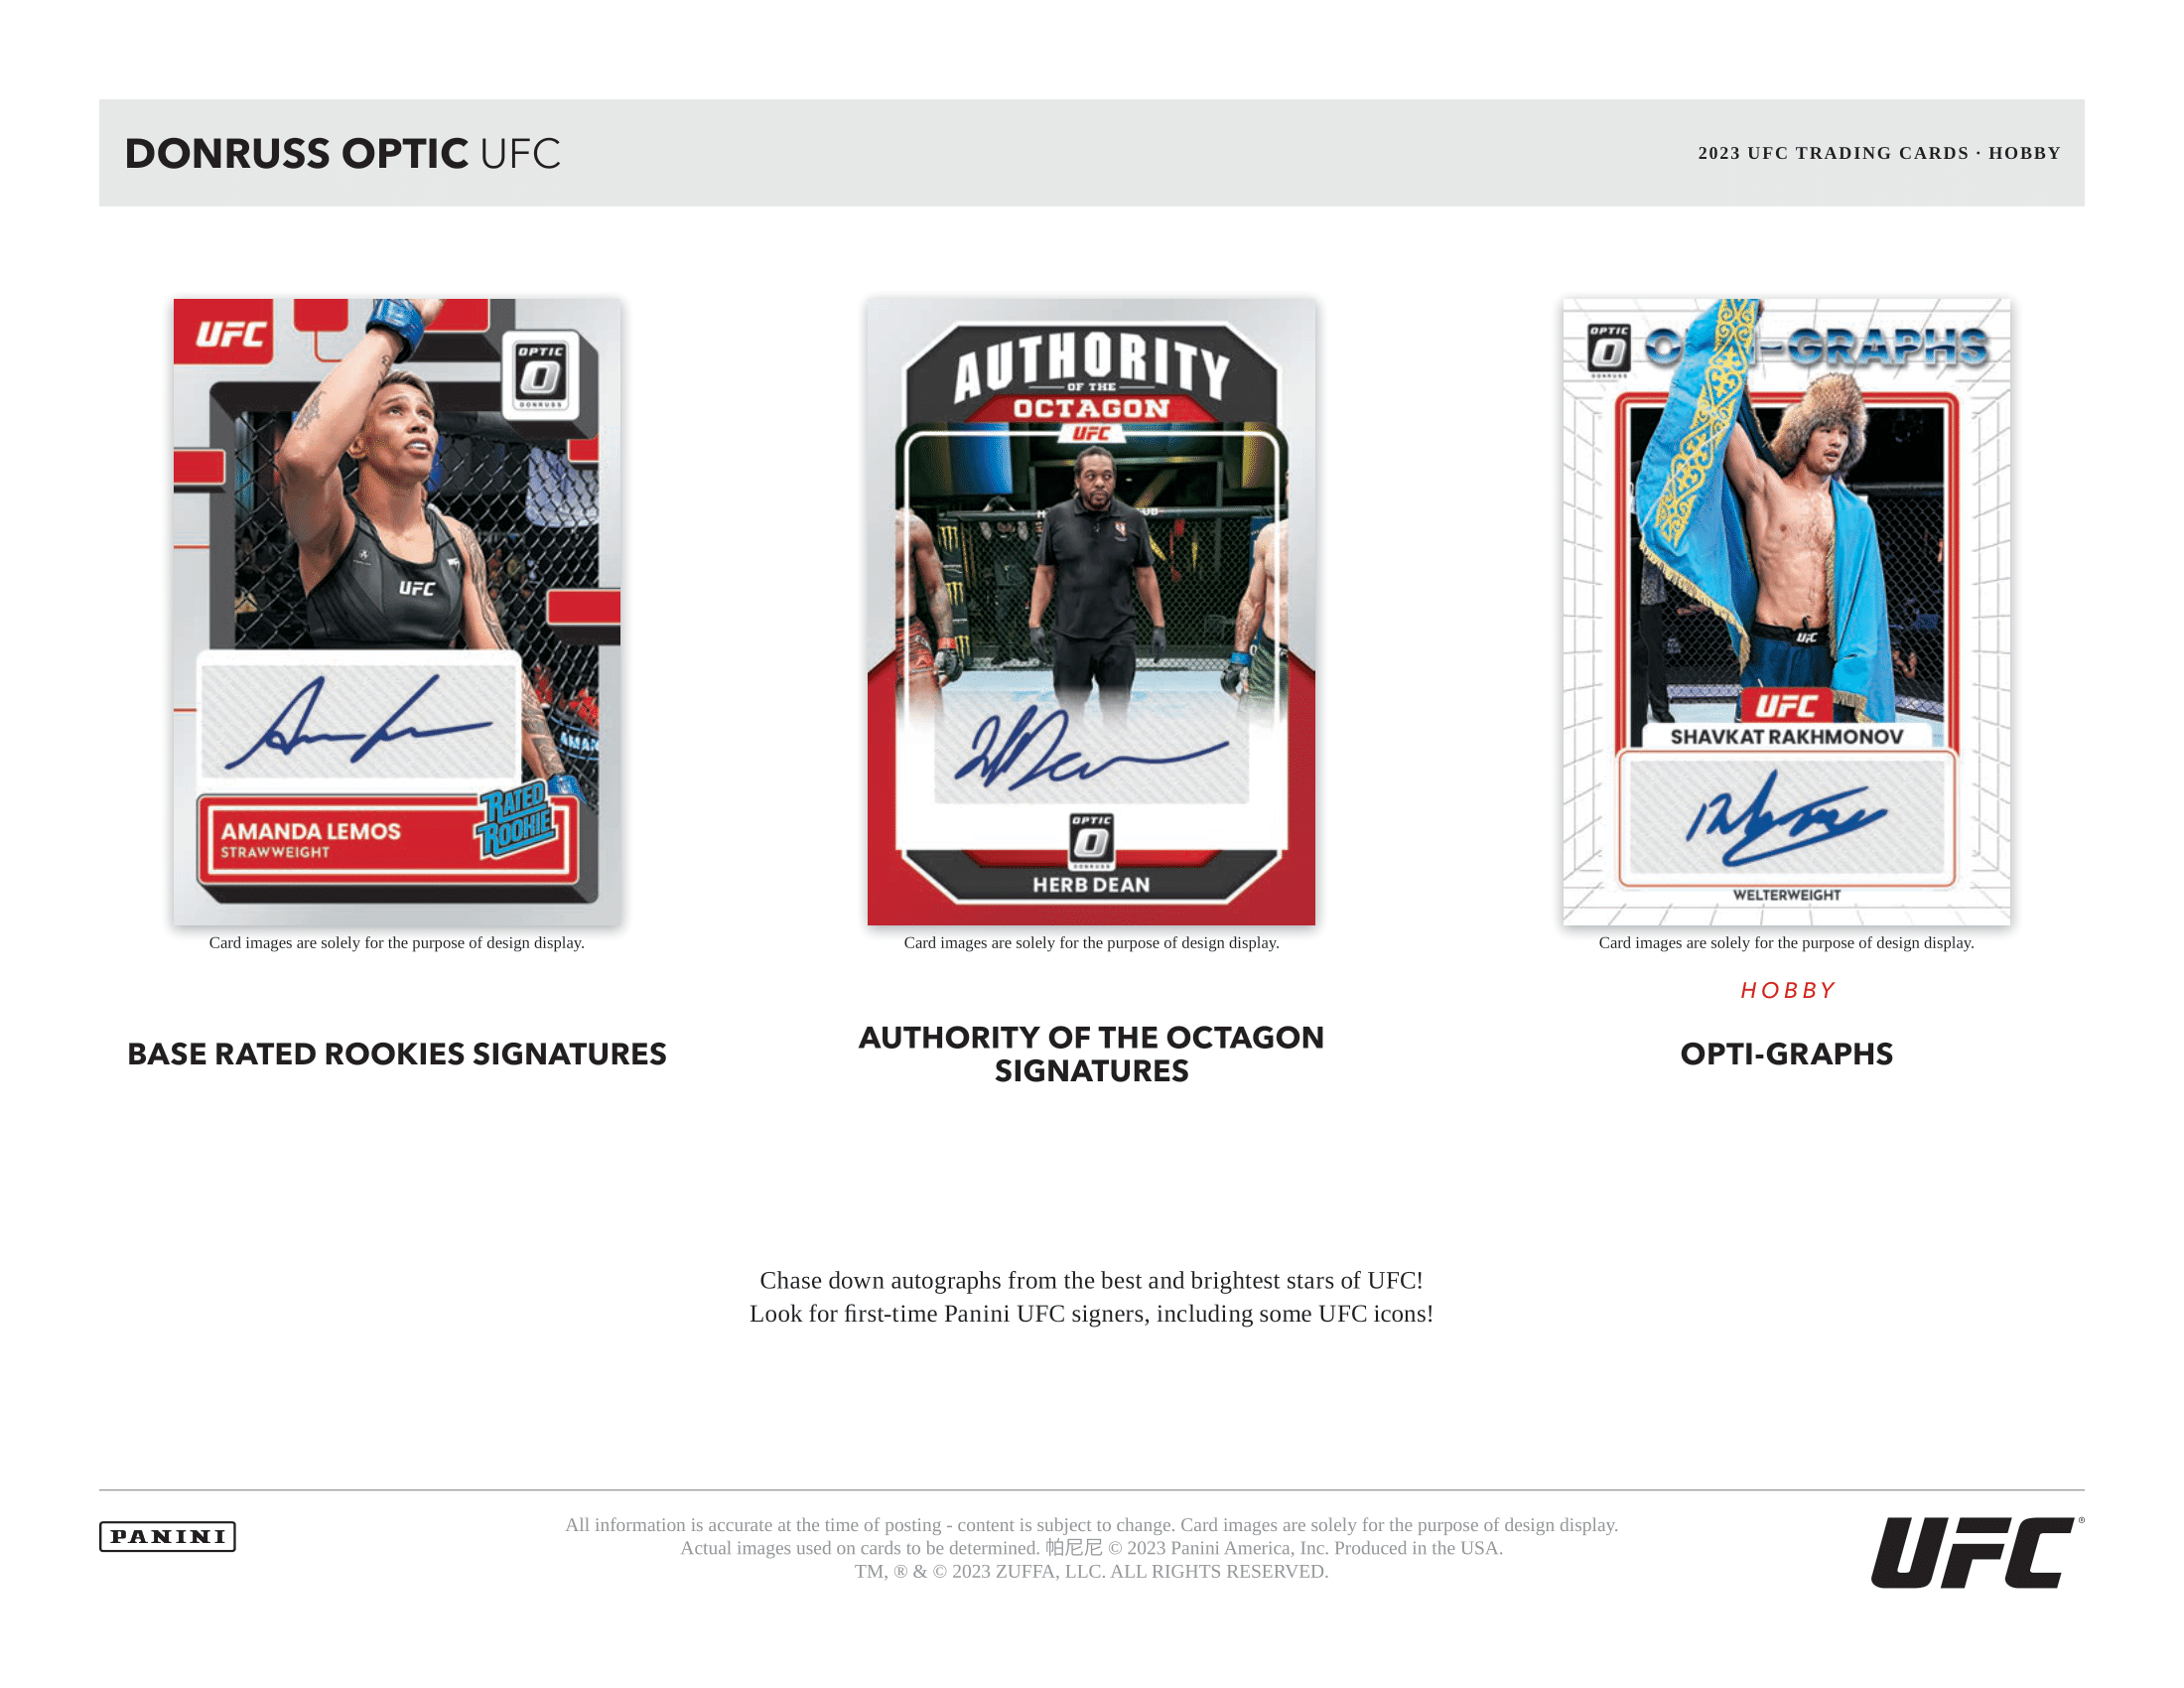 Panini - 2023 Donruss Optic UFC - Hobby Box - The Card Vault